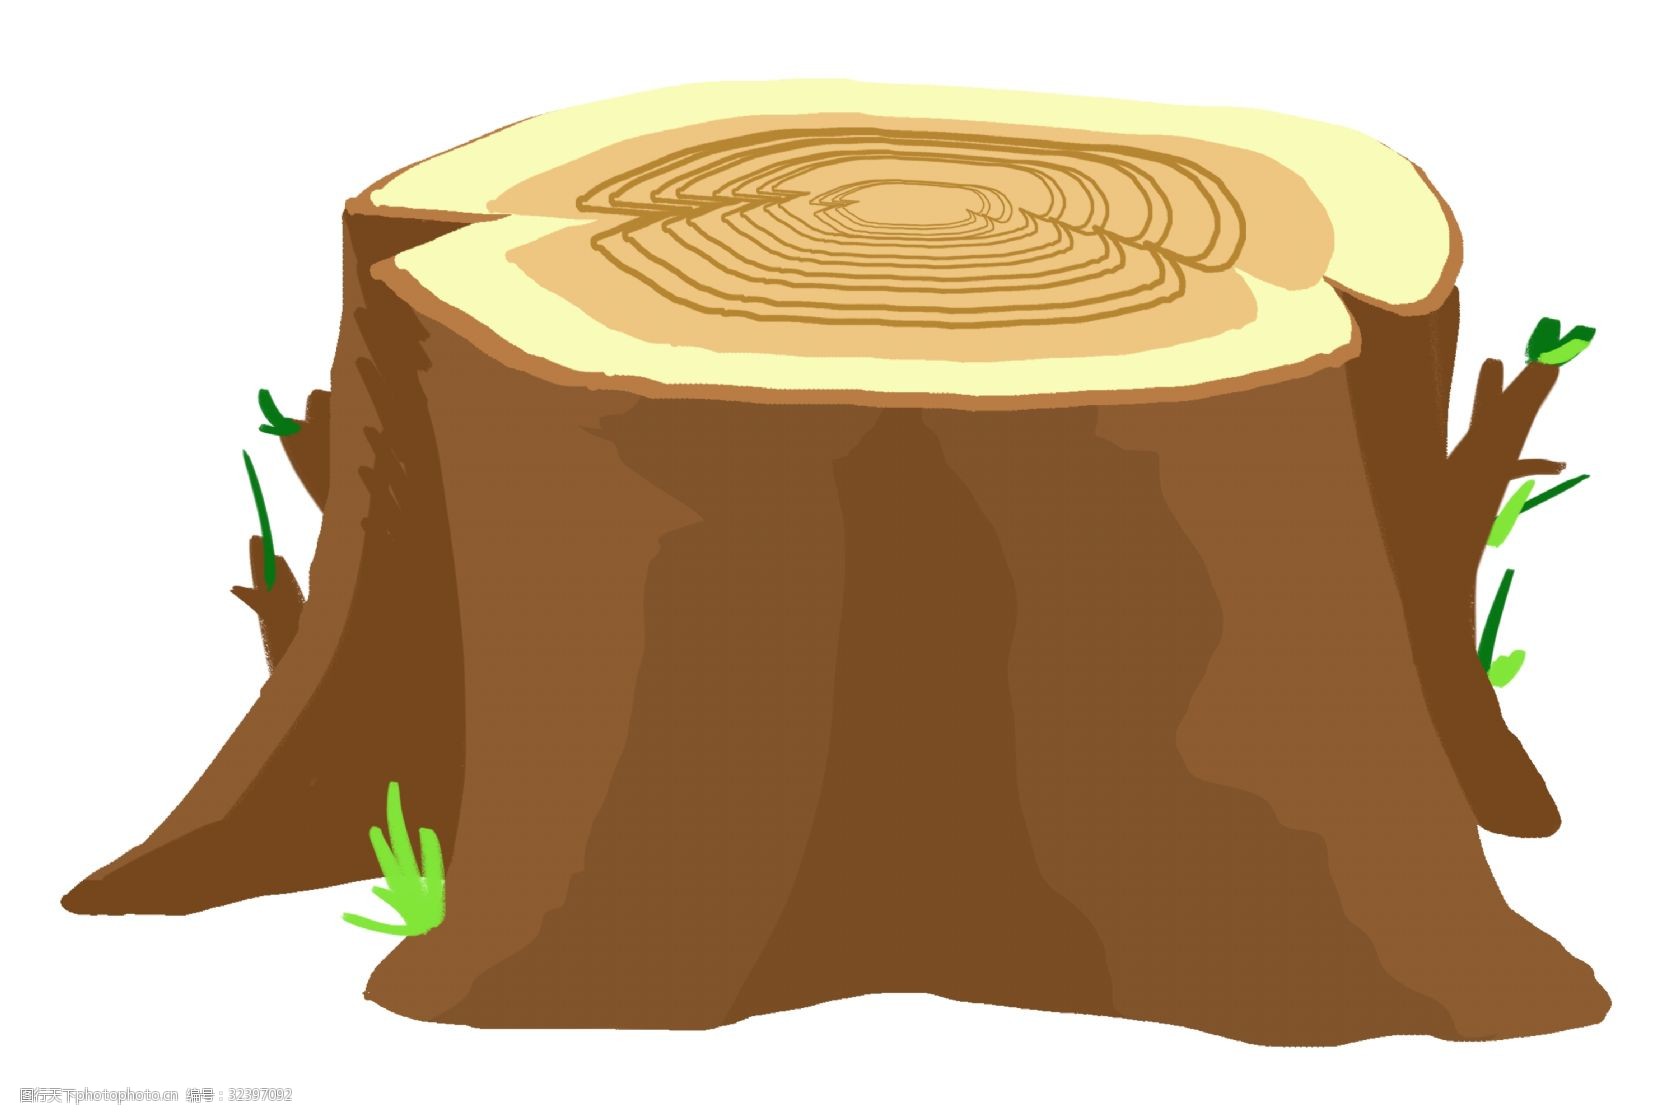 关键词:木质木墩卡通插画 木质插画 卡通插画 木头 树木 木质 材料